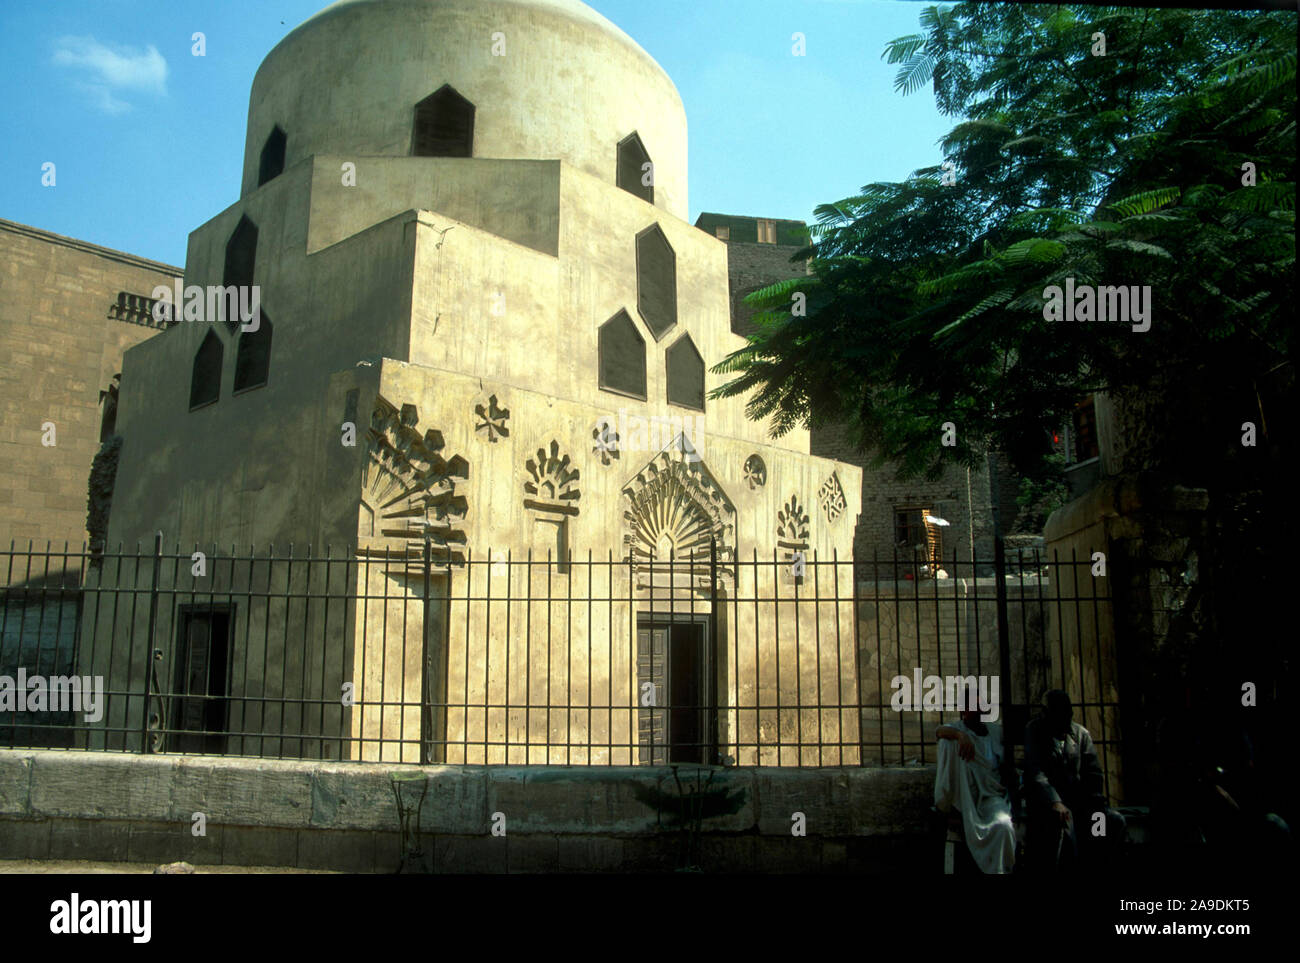 Mausoleum von Shajar al-Durr, sultana in Ägypten am 2. Mai 1250, markiert das Ende des Ayyubid Herrschaft und dem Beginn der Mameluckische Ära. Lineal für 80 Tage. Stockfoto